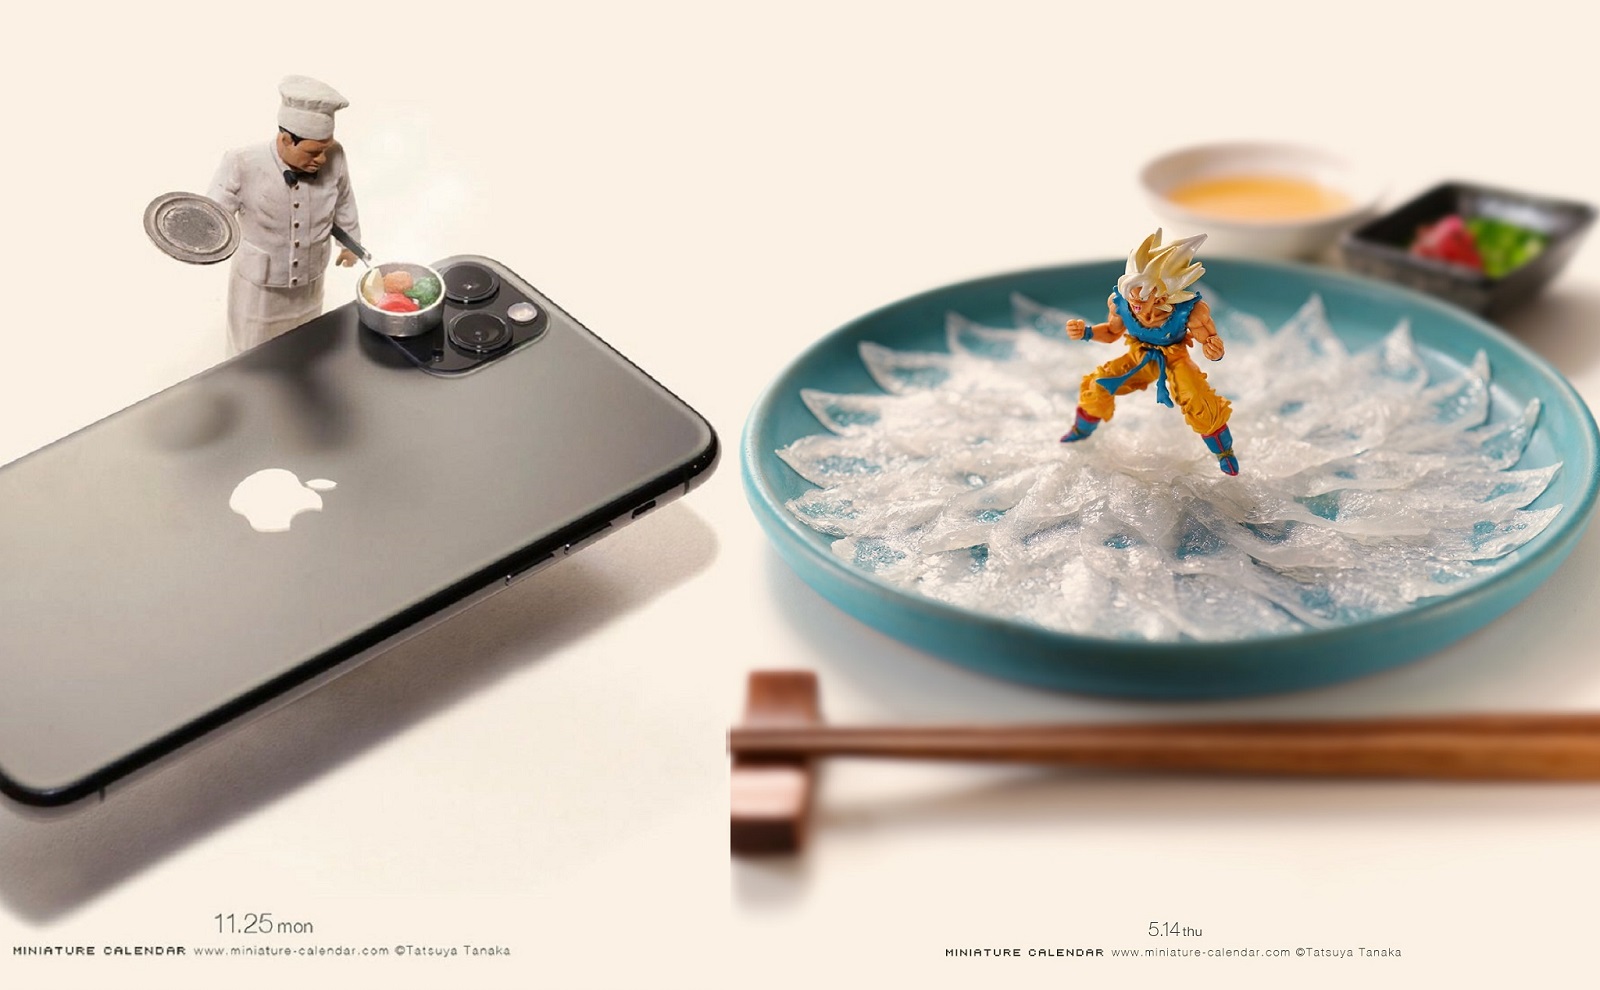 [Ảnh đẹp] Miniature Life: Bộ ảnh cuộc sống thu nhỏ của Tatsuya Tanaka